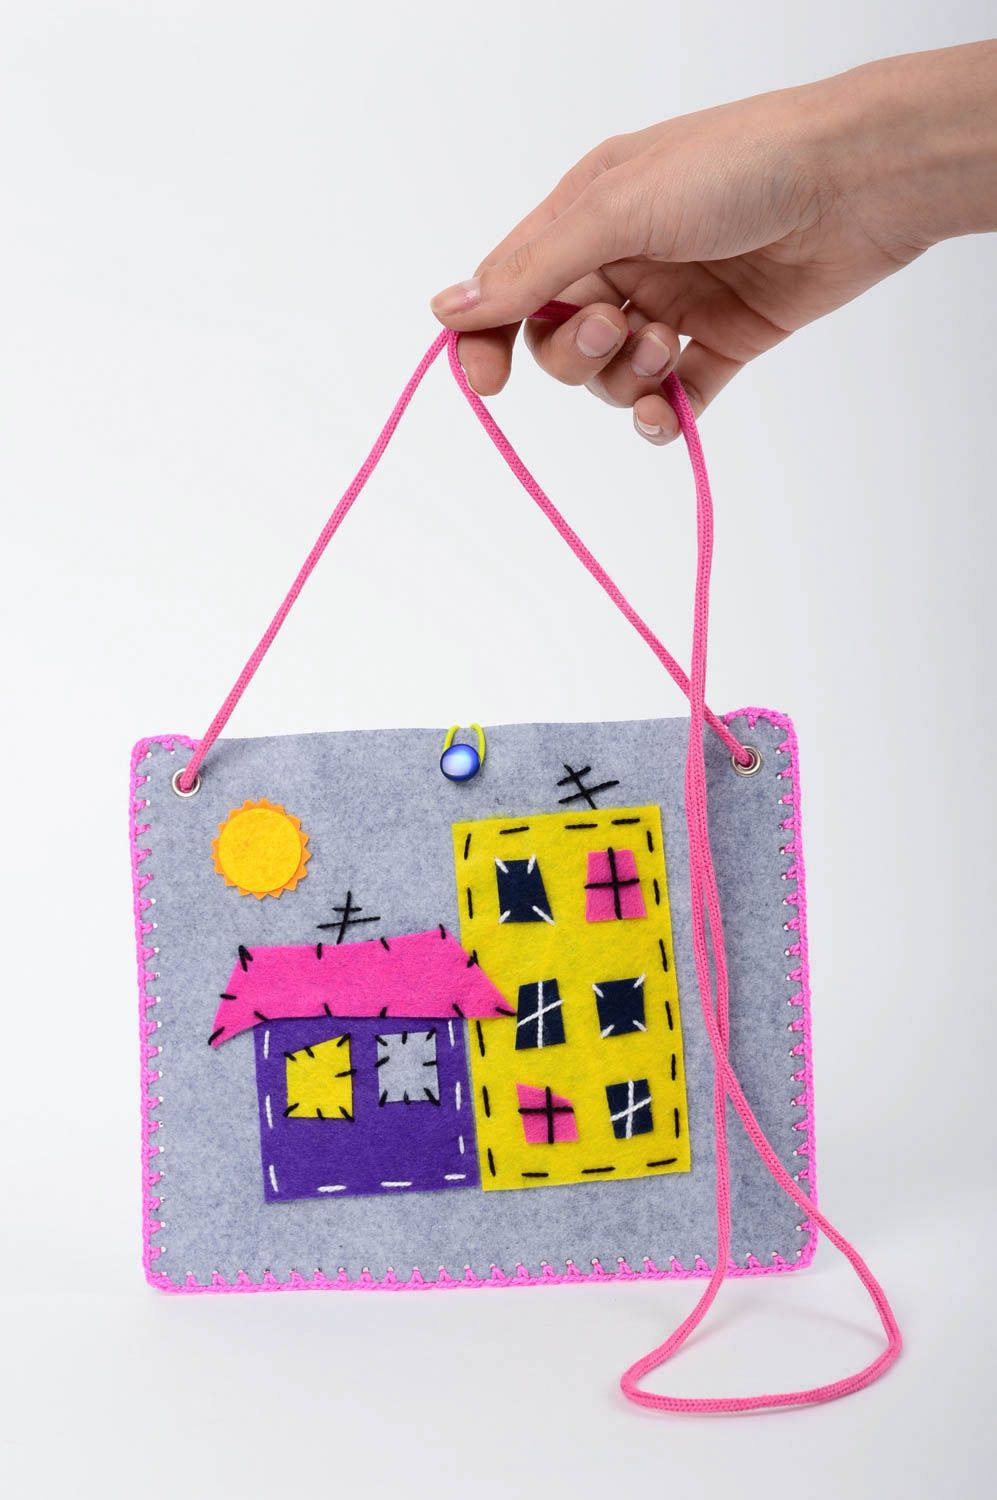 Handmade felt handbag small woolen purse wool accessories clutch bag for kids photo 5